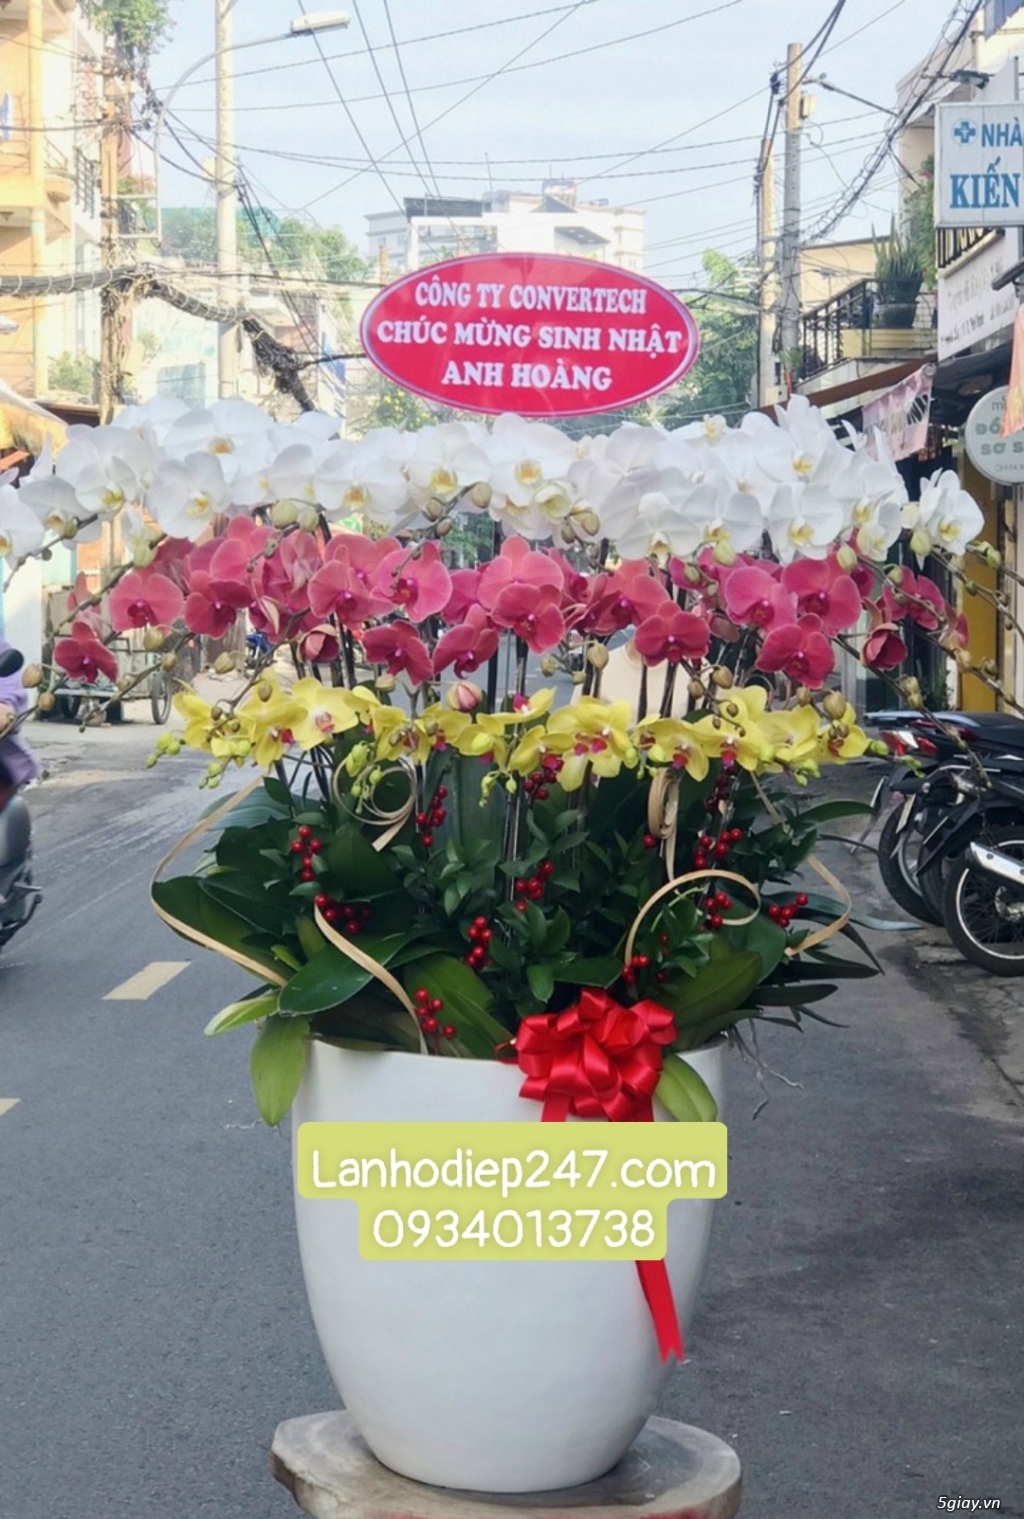 Những mẫu Lan Hồ Điệp đẹp bán chạy nhất tại Hoa lan Sài Gòn 247 - 15